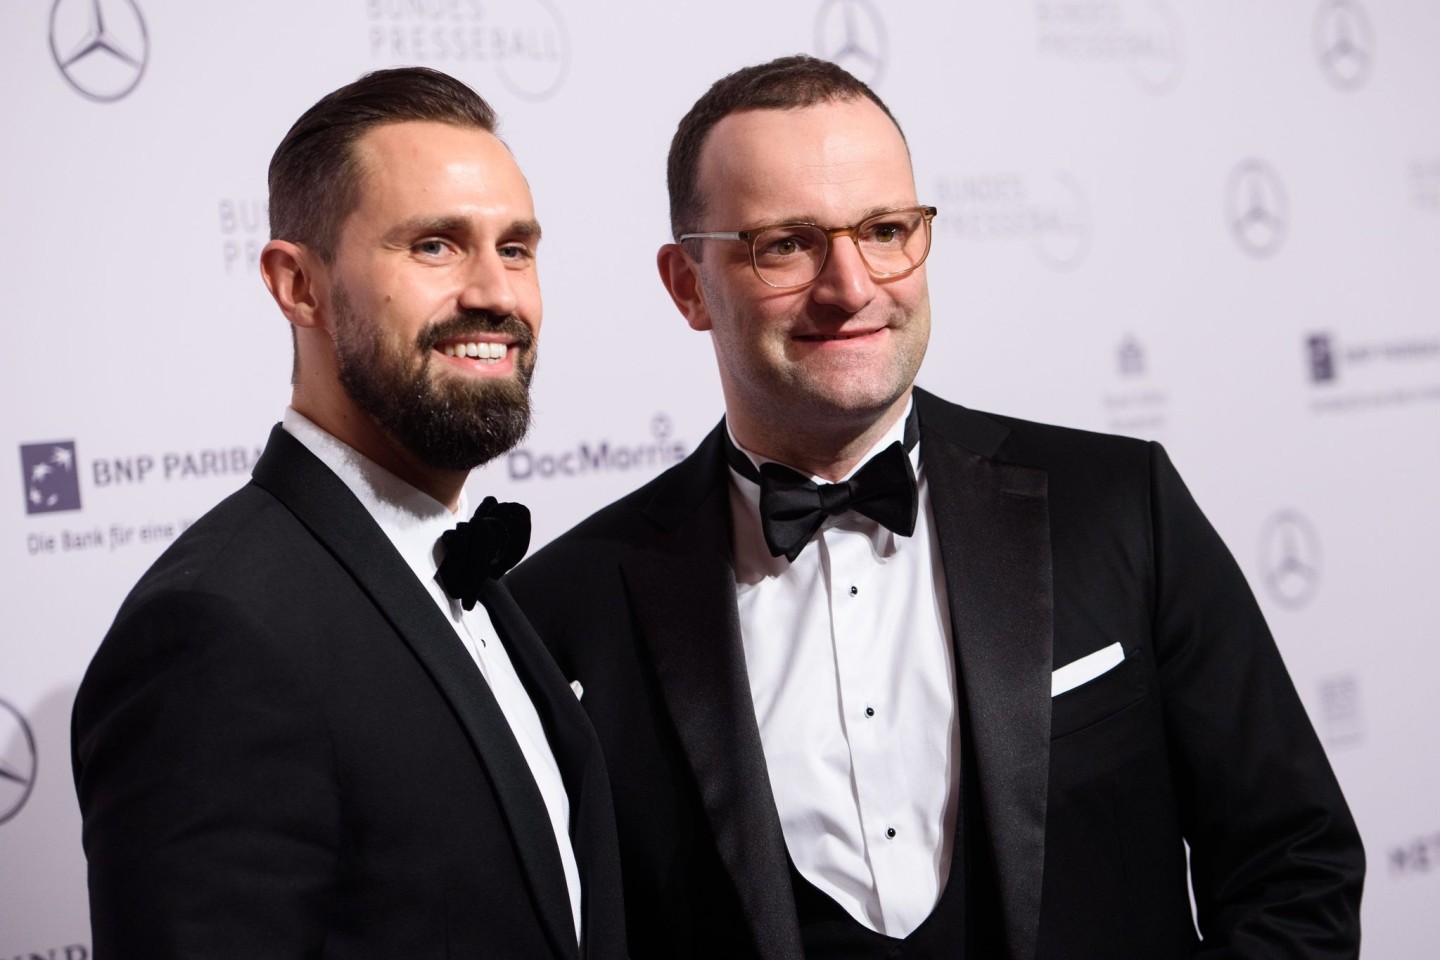 Jens Spahn (r.) und sein Ehepartner Daniel Funke im November 2018 beim 67. Bundespresseball im Hotel Adlon.